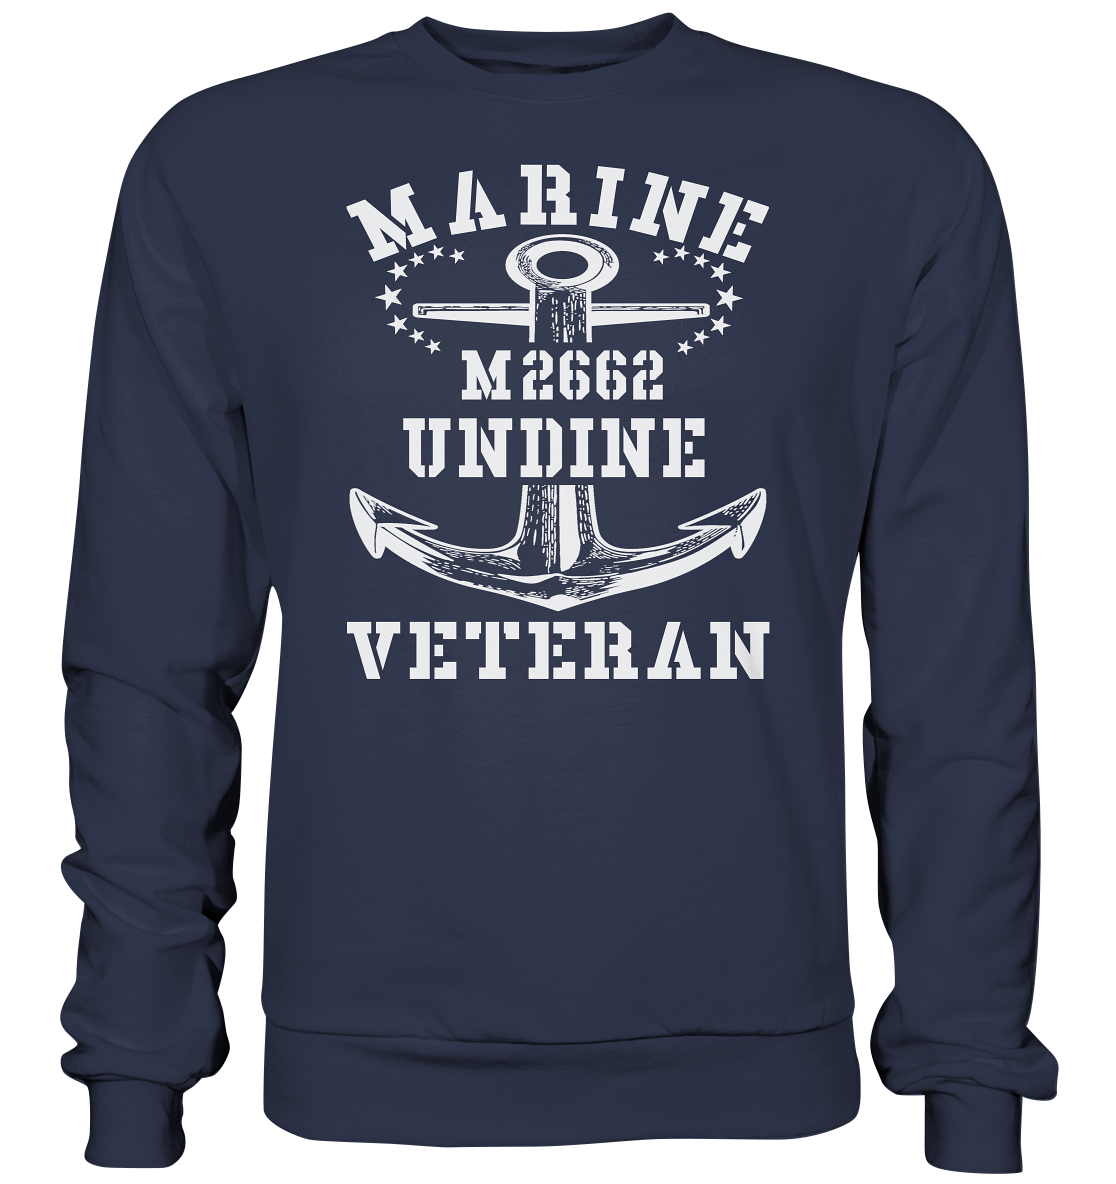 BiMi M2662 UNDINE Marine Veteran - Premium Sweatshirt